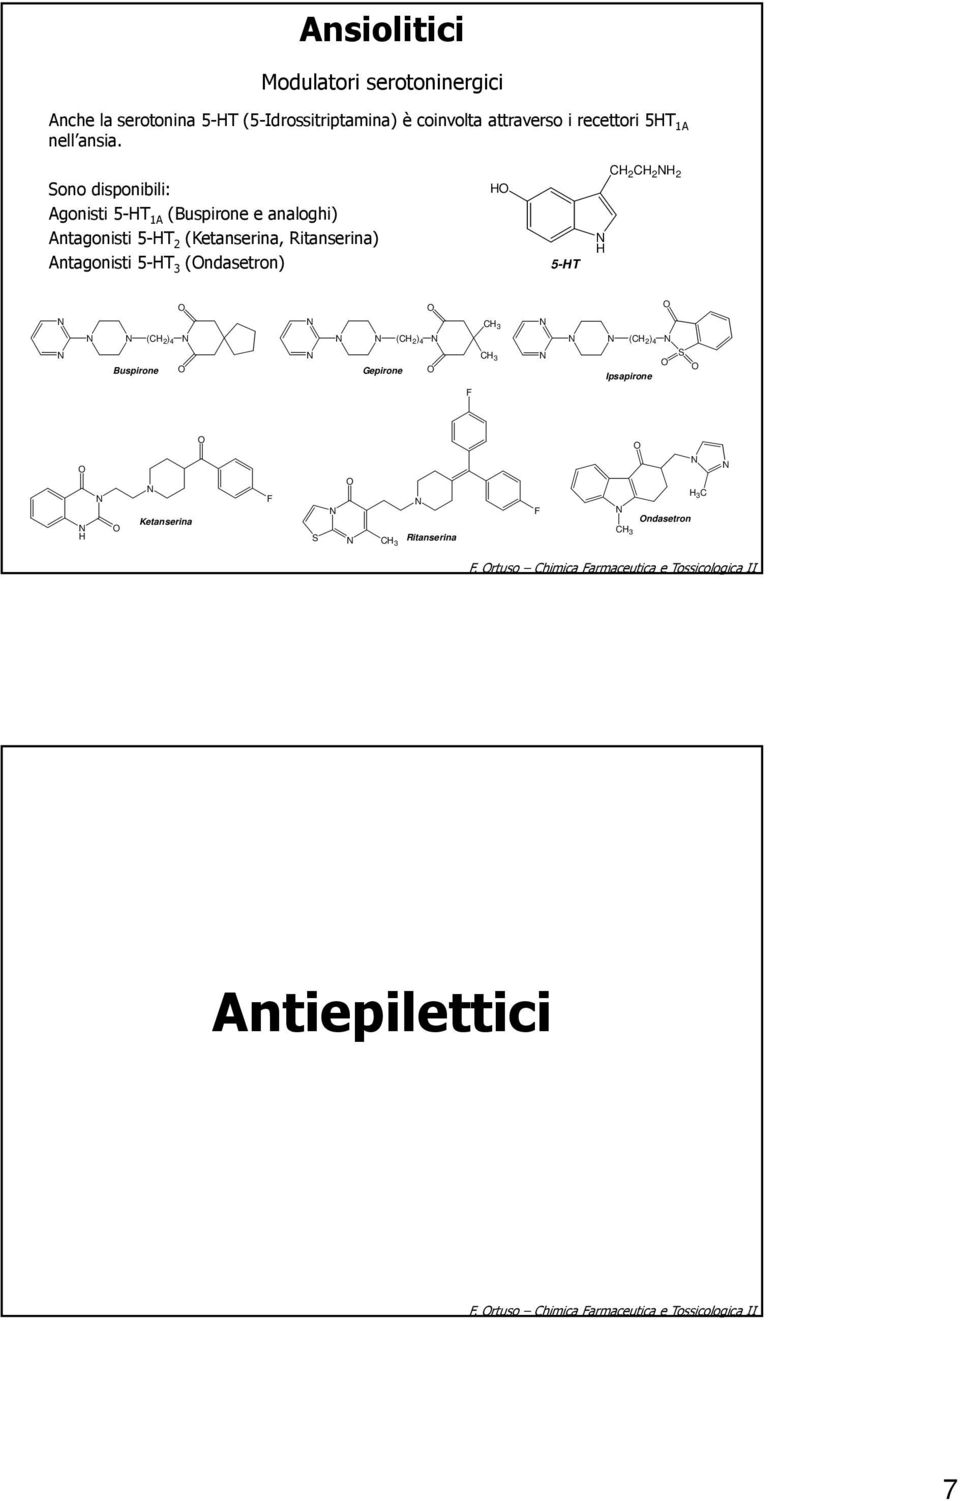 Sono disponibili: Agonisti 5-T 1A (Buspirone e analoghi) Antagonisti 5-T 2 (Ketanserina, Ritanserina) Antagonisti 5-T 3